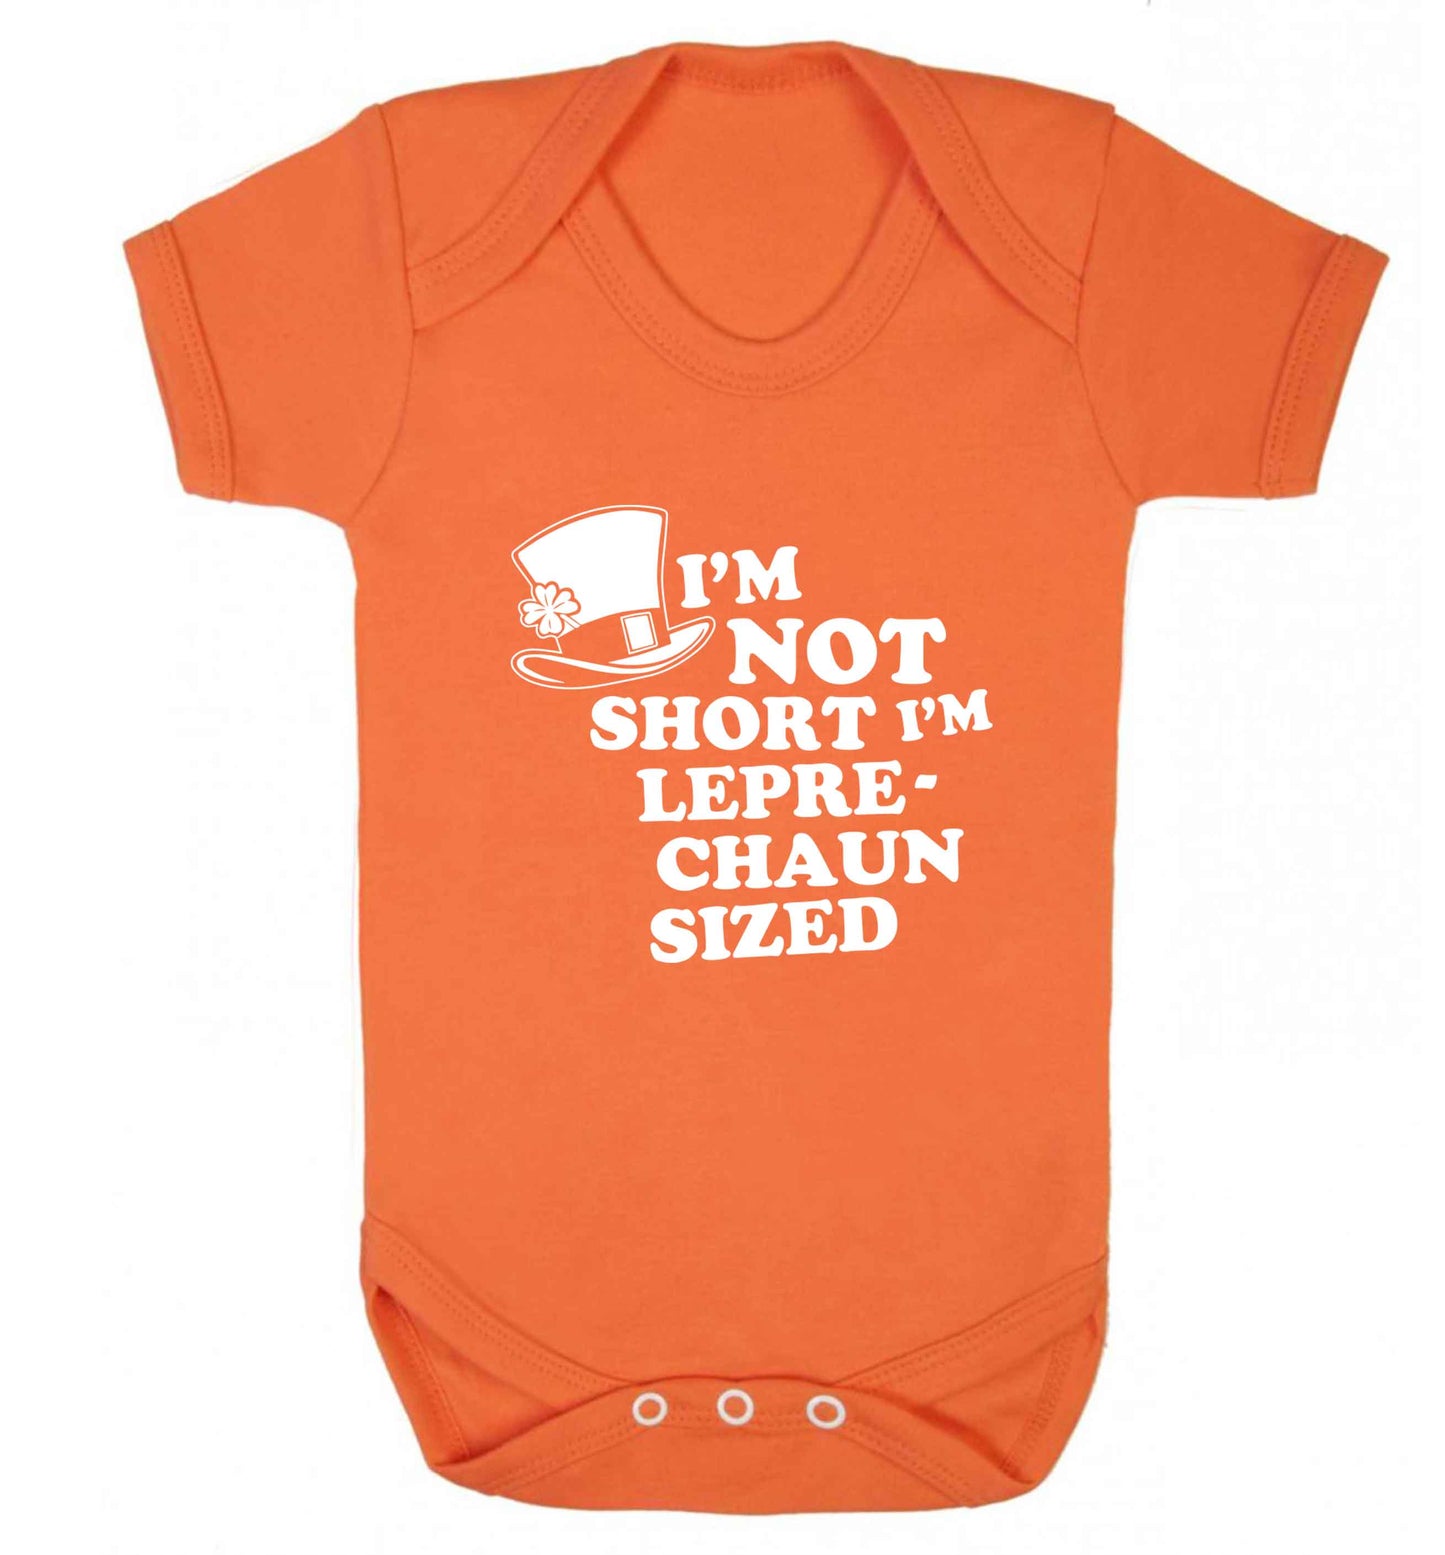 I'm not short I'm leprechaun sized baby vest orange 18-24 months